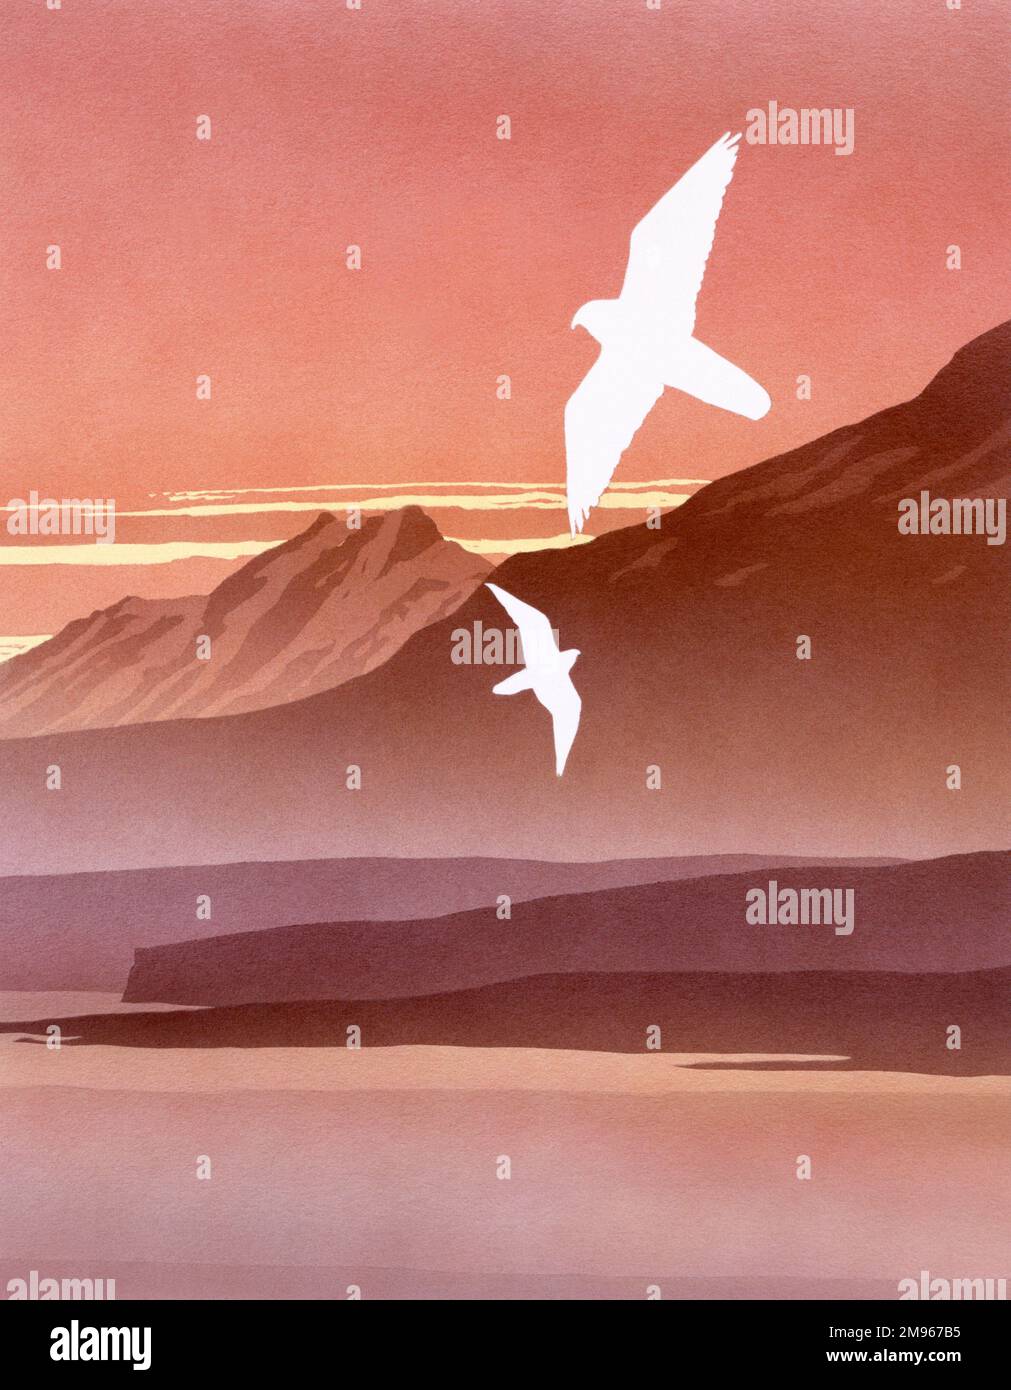 Un paysage de rêve au coucher du soleil, avec deux oiseaux de proie (Faucon pèlerin?) un paysage de hauts sommets, une mer immobile et des brouillards enveloppants. Peinture à l'aérographe par Malcolm Greensmith Banque D'Images